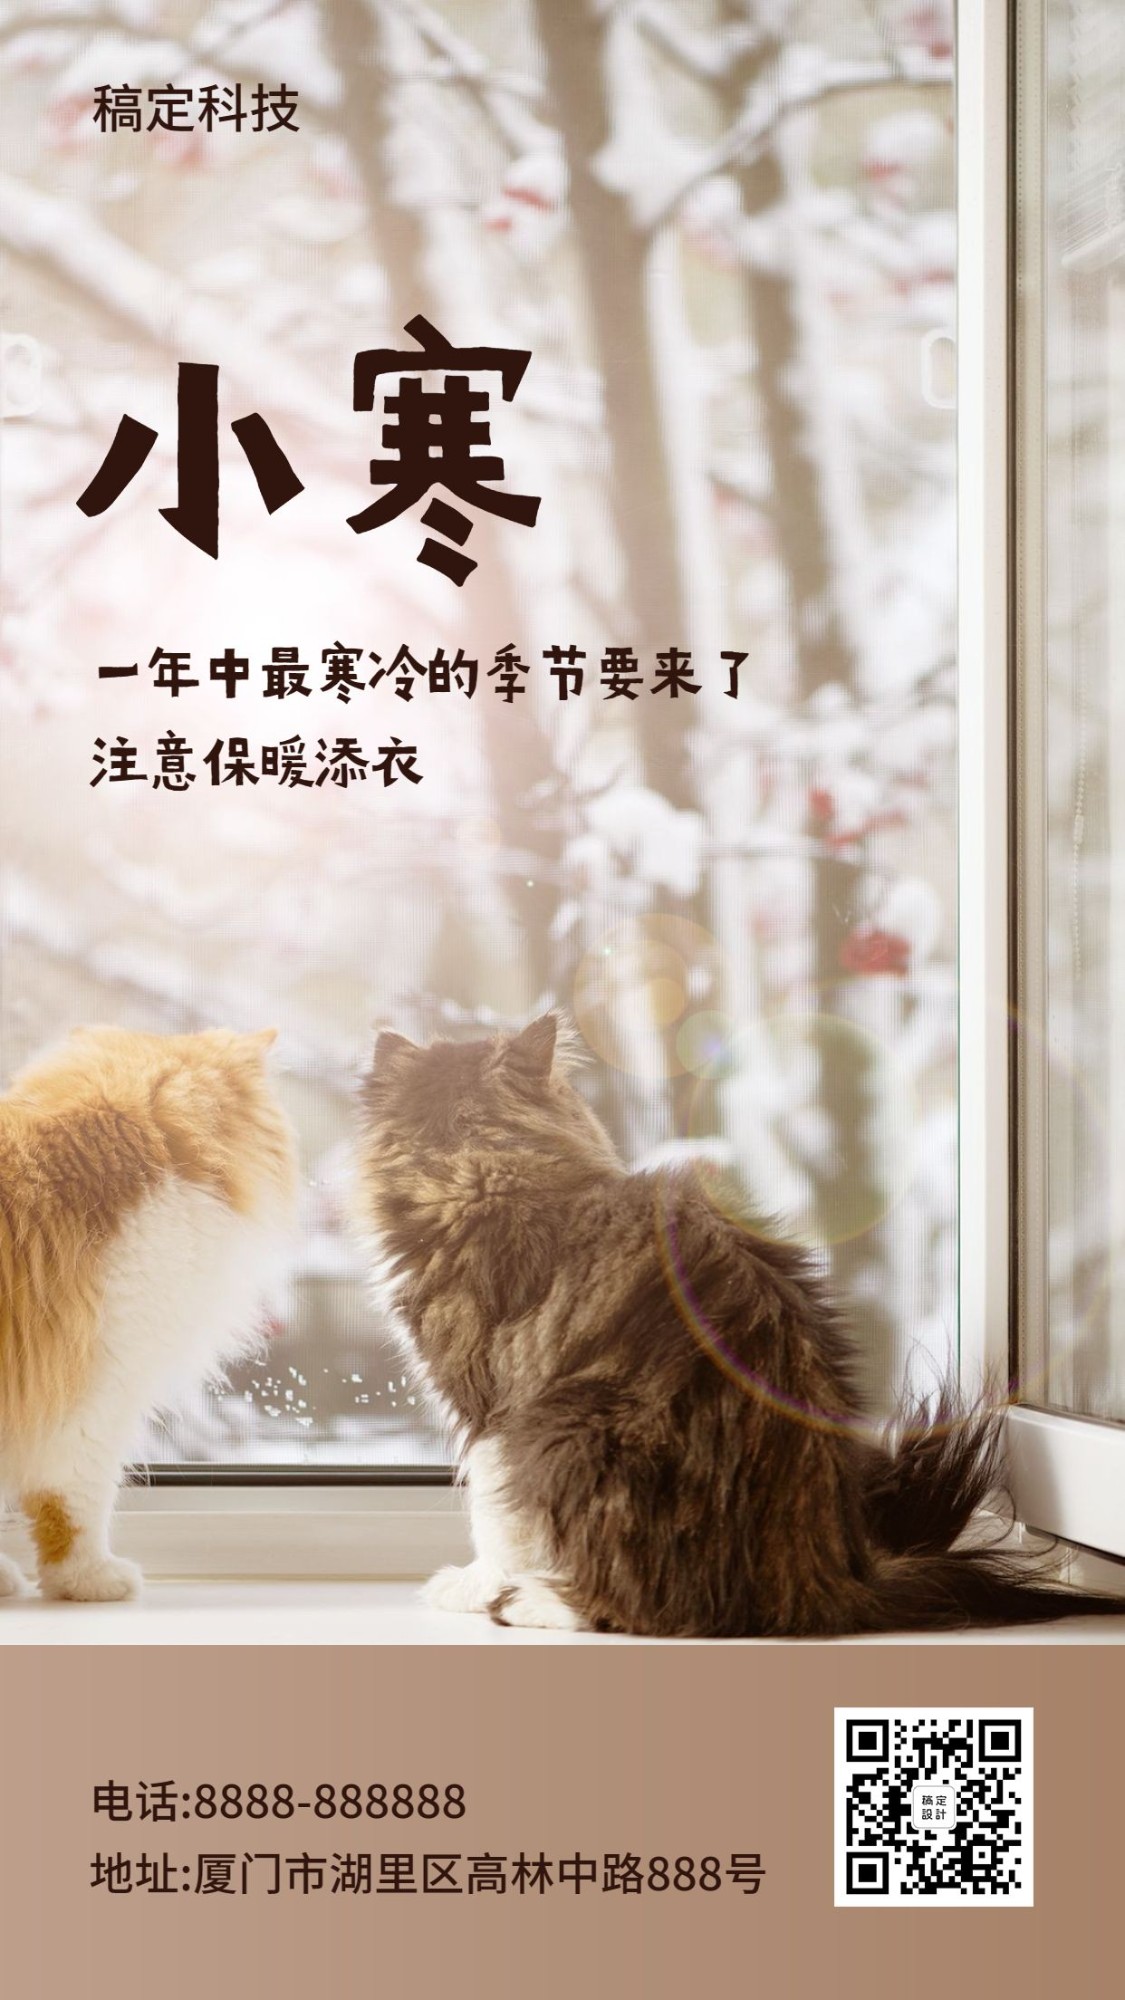 小寒实景宠物猫咪可爱温馨氛围手机海报预览效果